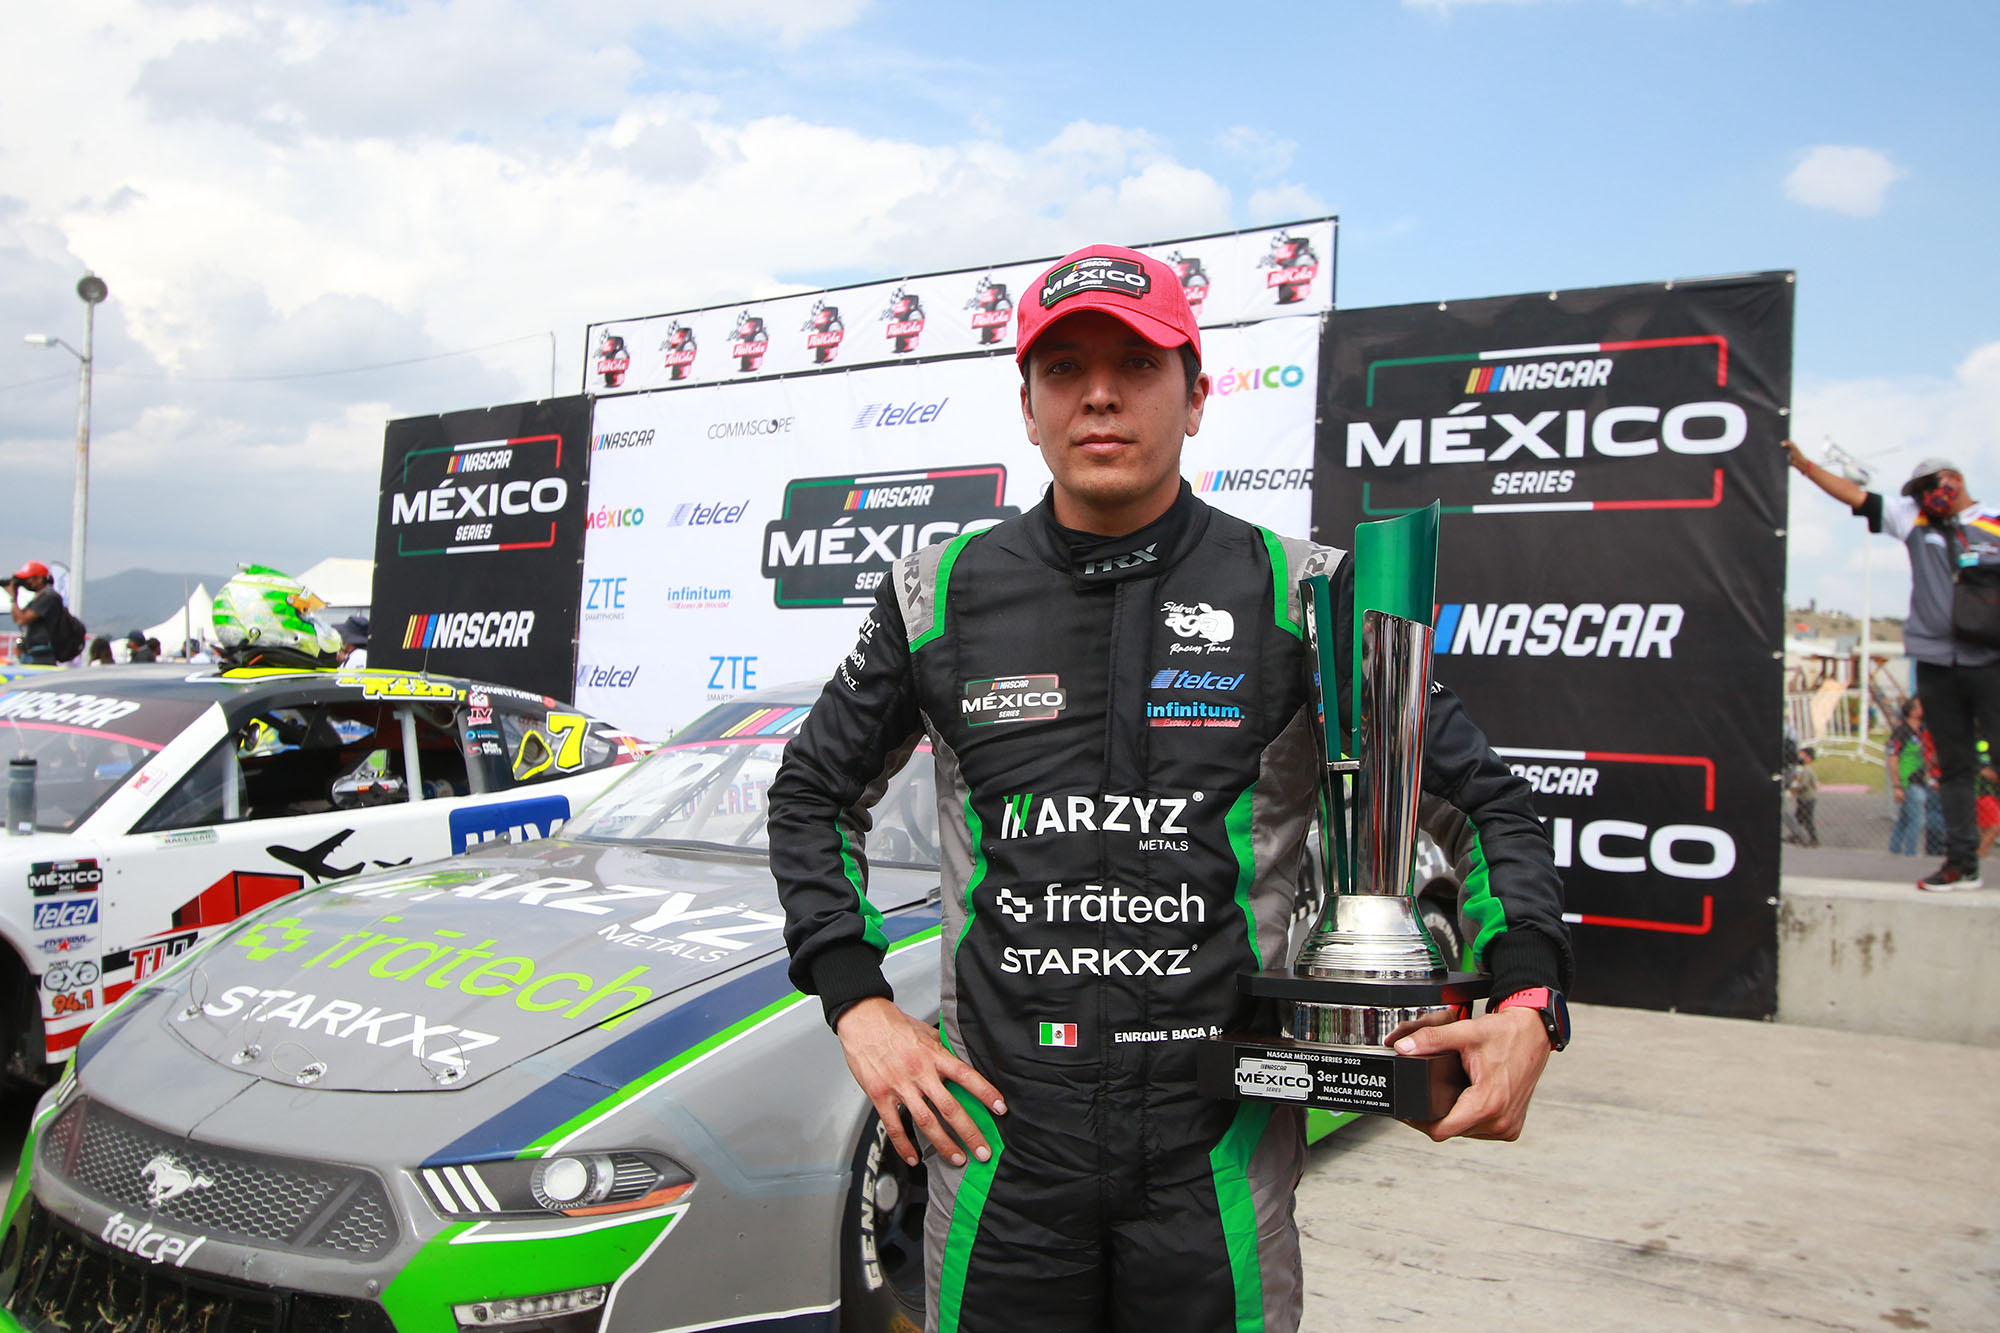 La Escudería MARZAL Arzyz-Fratech-Starkxz consiguió su primer podio de NASCAR México Series con Enrique Baca